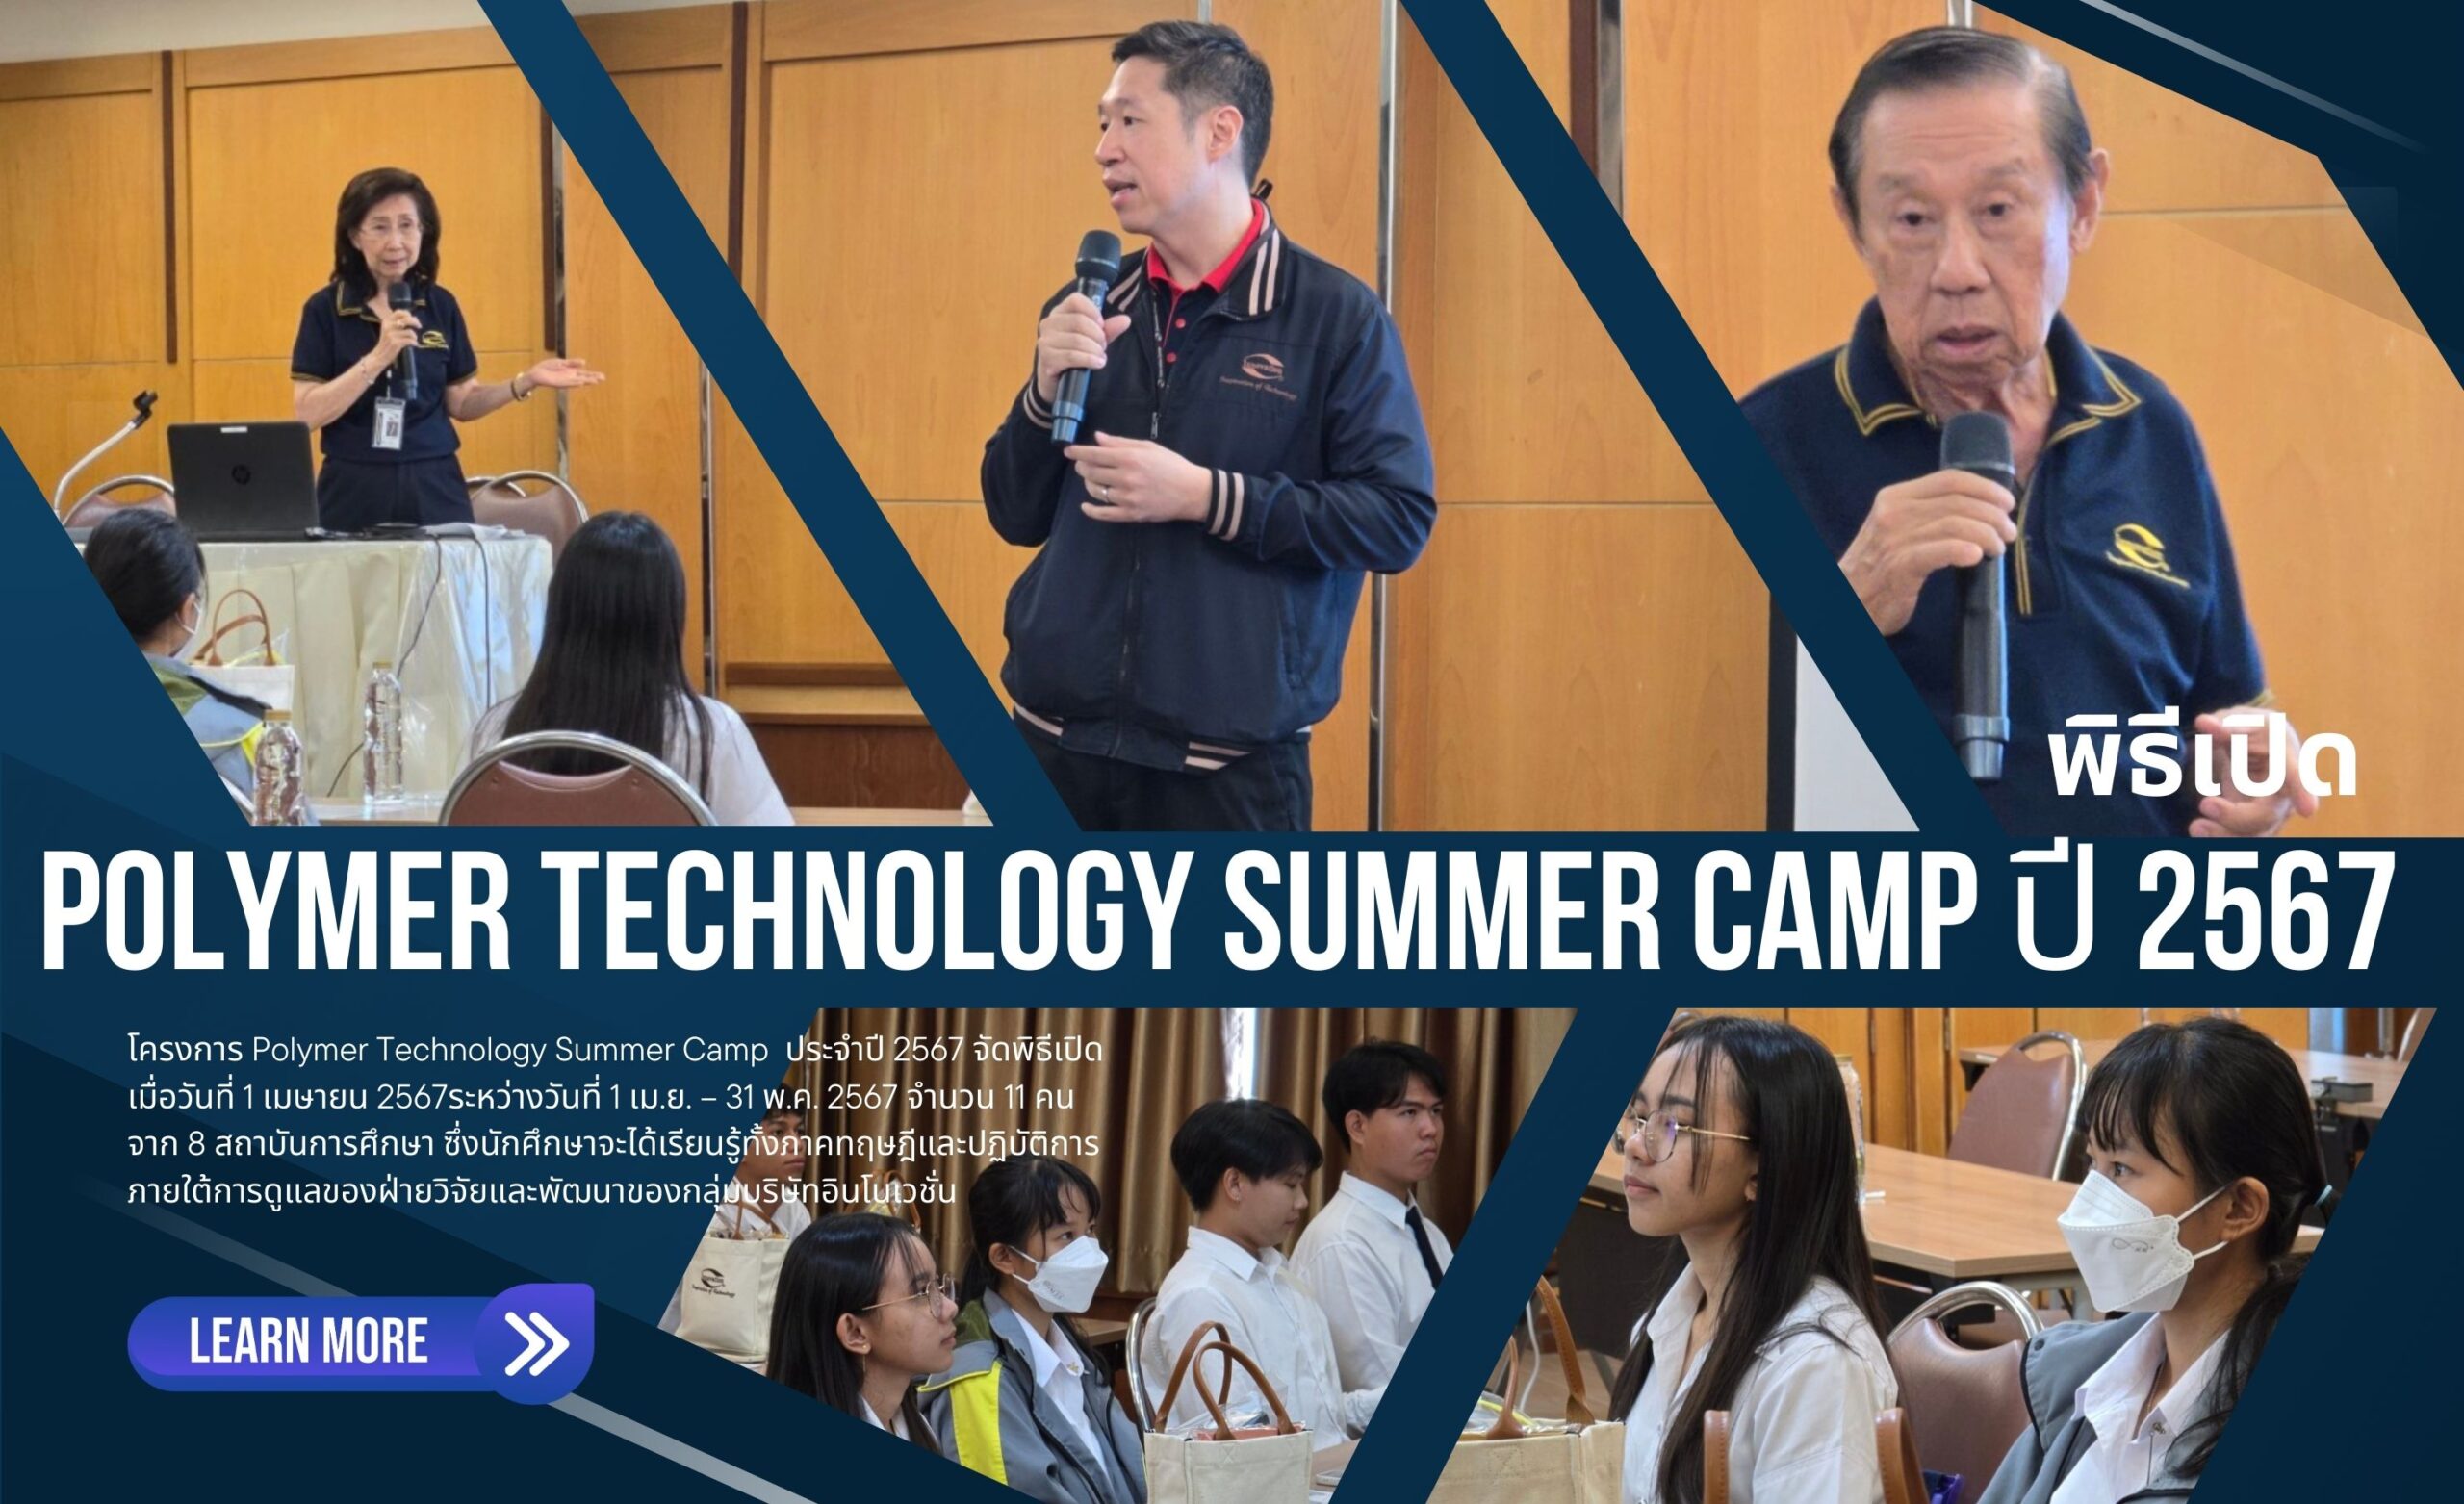 พิธีเปิด Polymer Technology Summer Camp ปี 2567